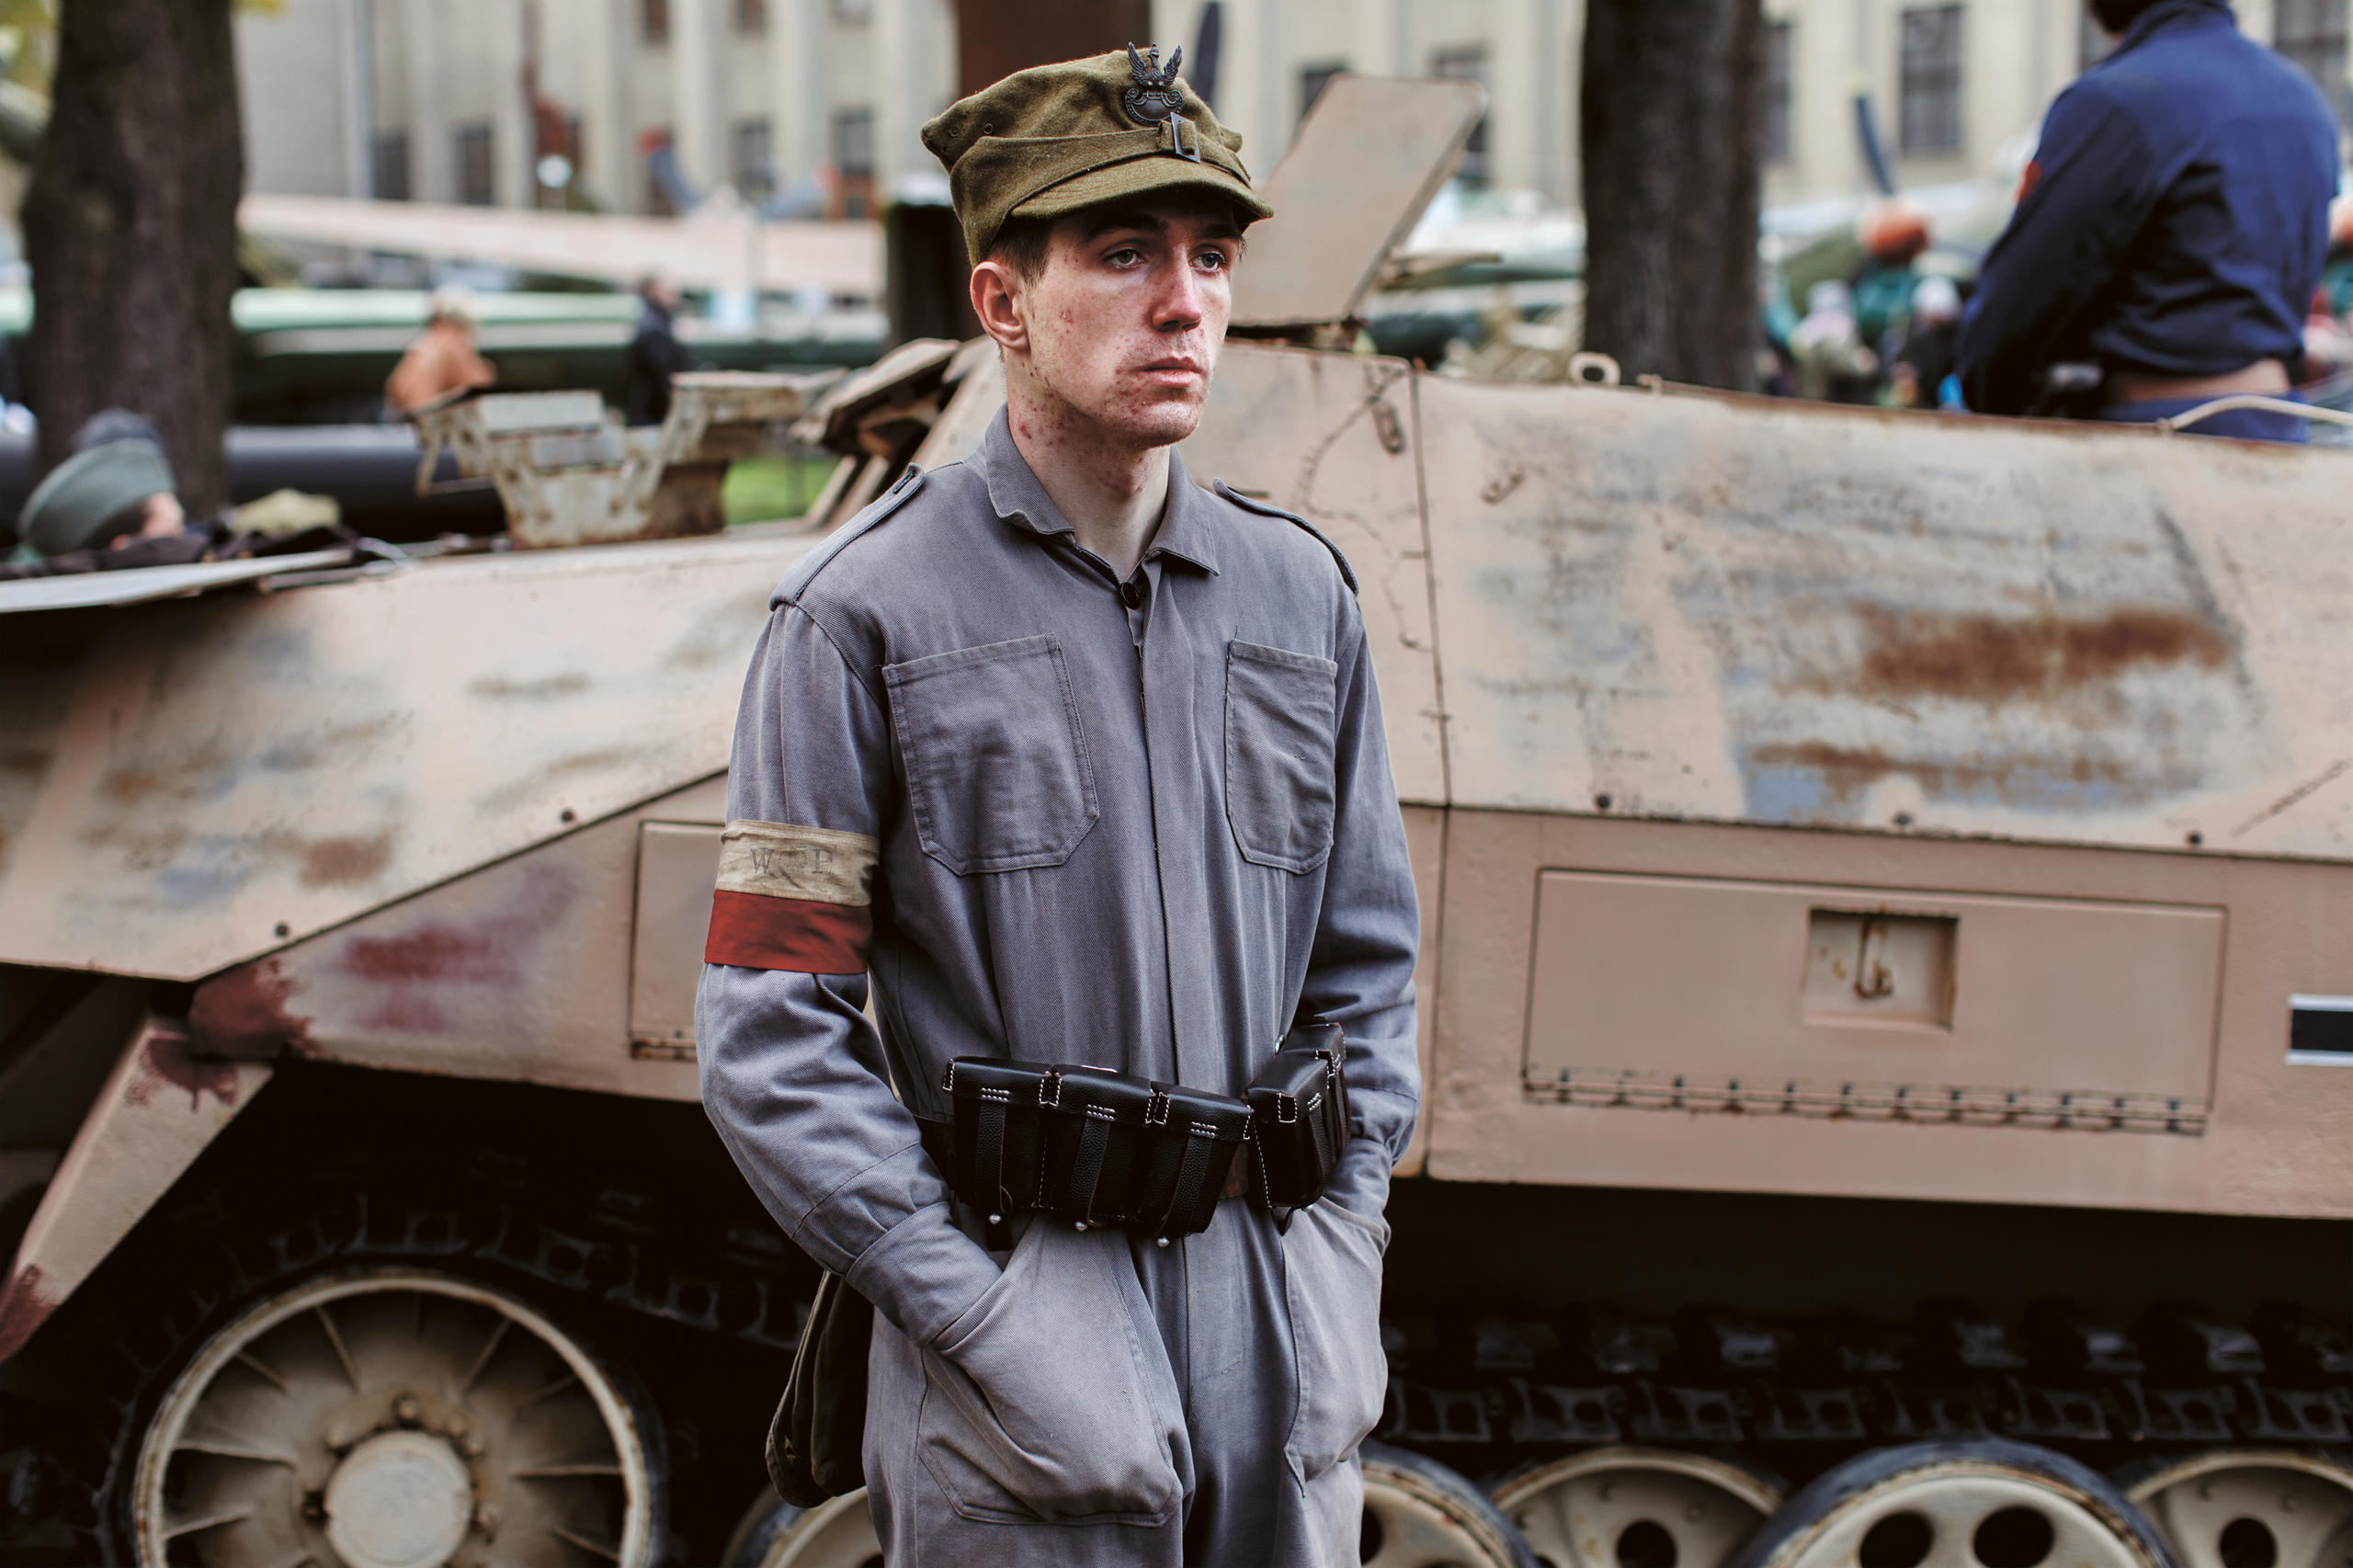 Junger Mann in Uniform vor Panzer